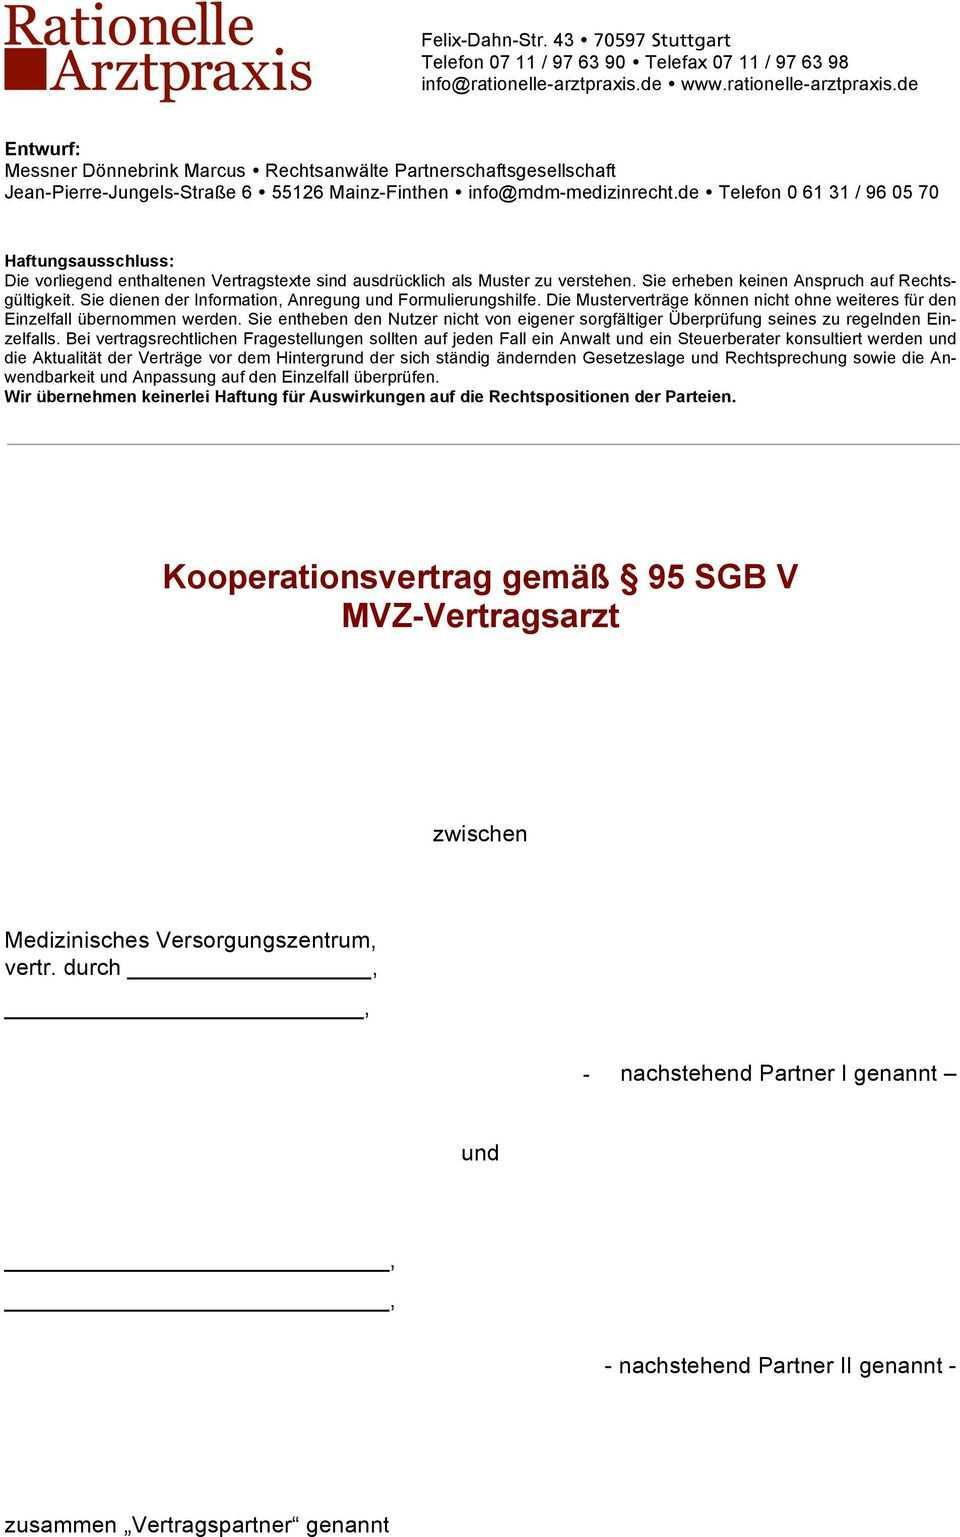 Kooperationsvertrag Gemass 95 Sgb V Mvz Vertragsarzt Pdf Free Download